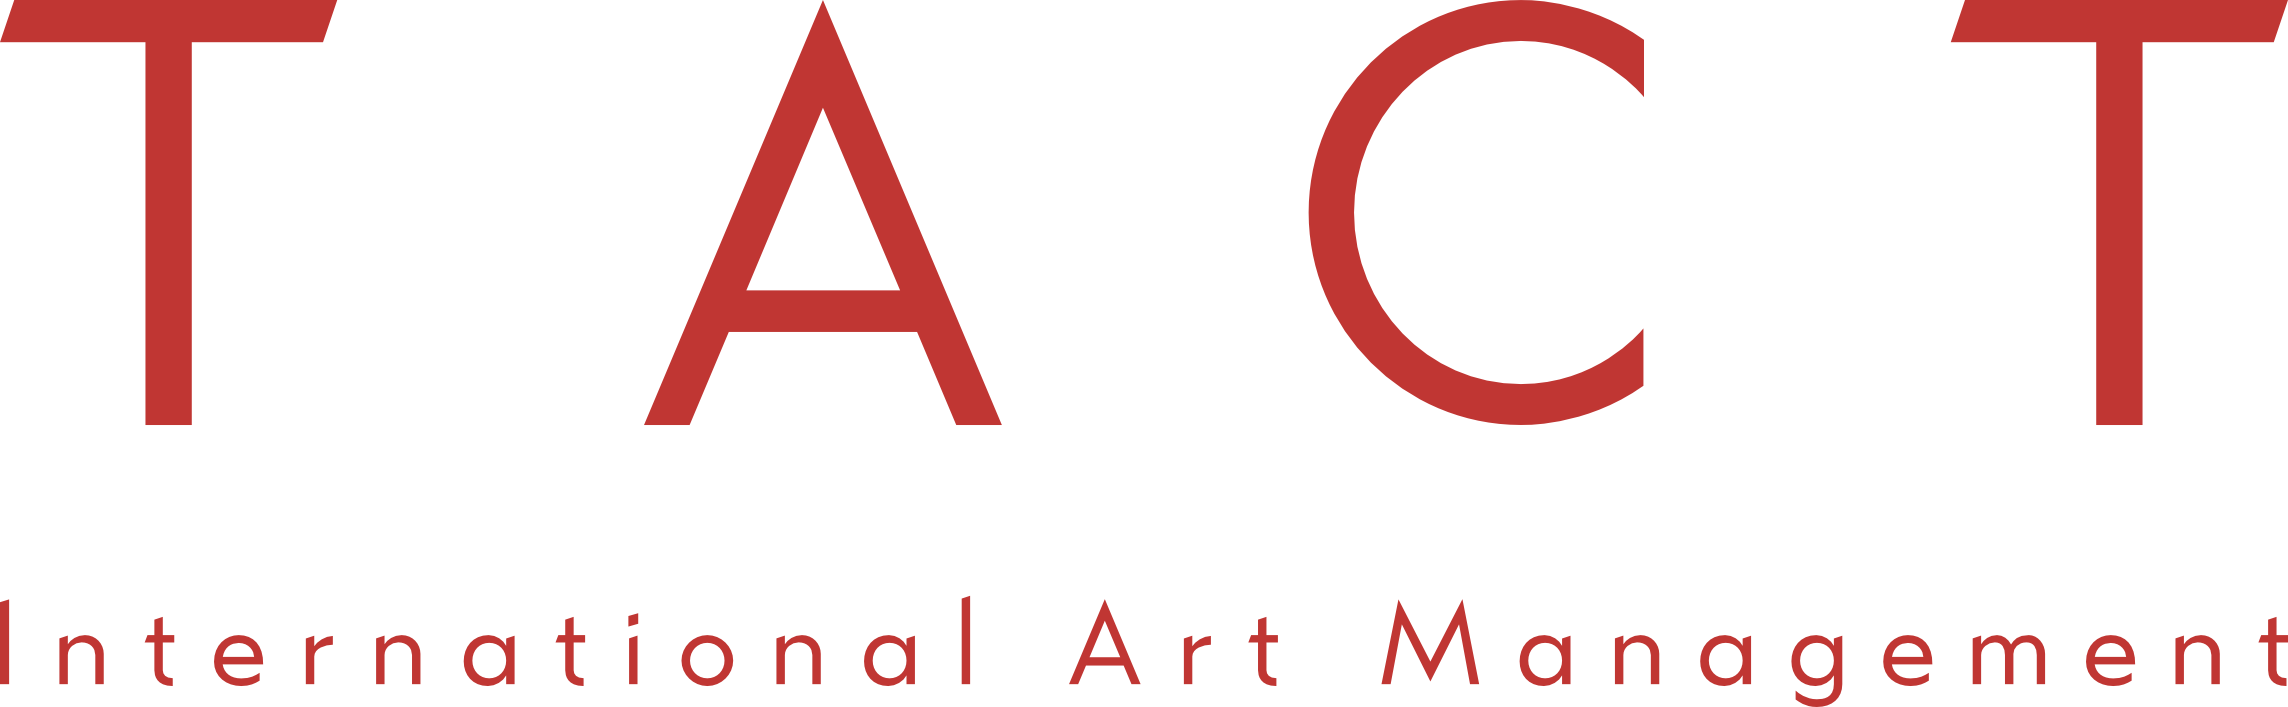 TACT International Art Management